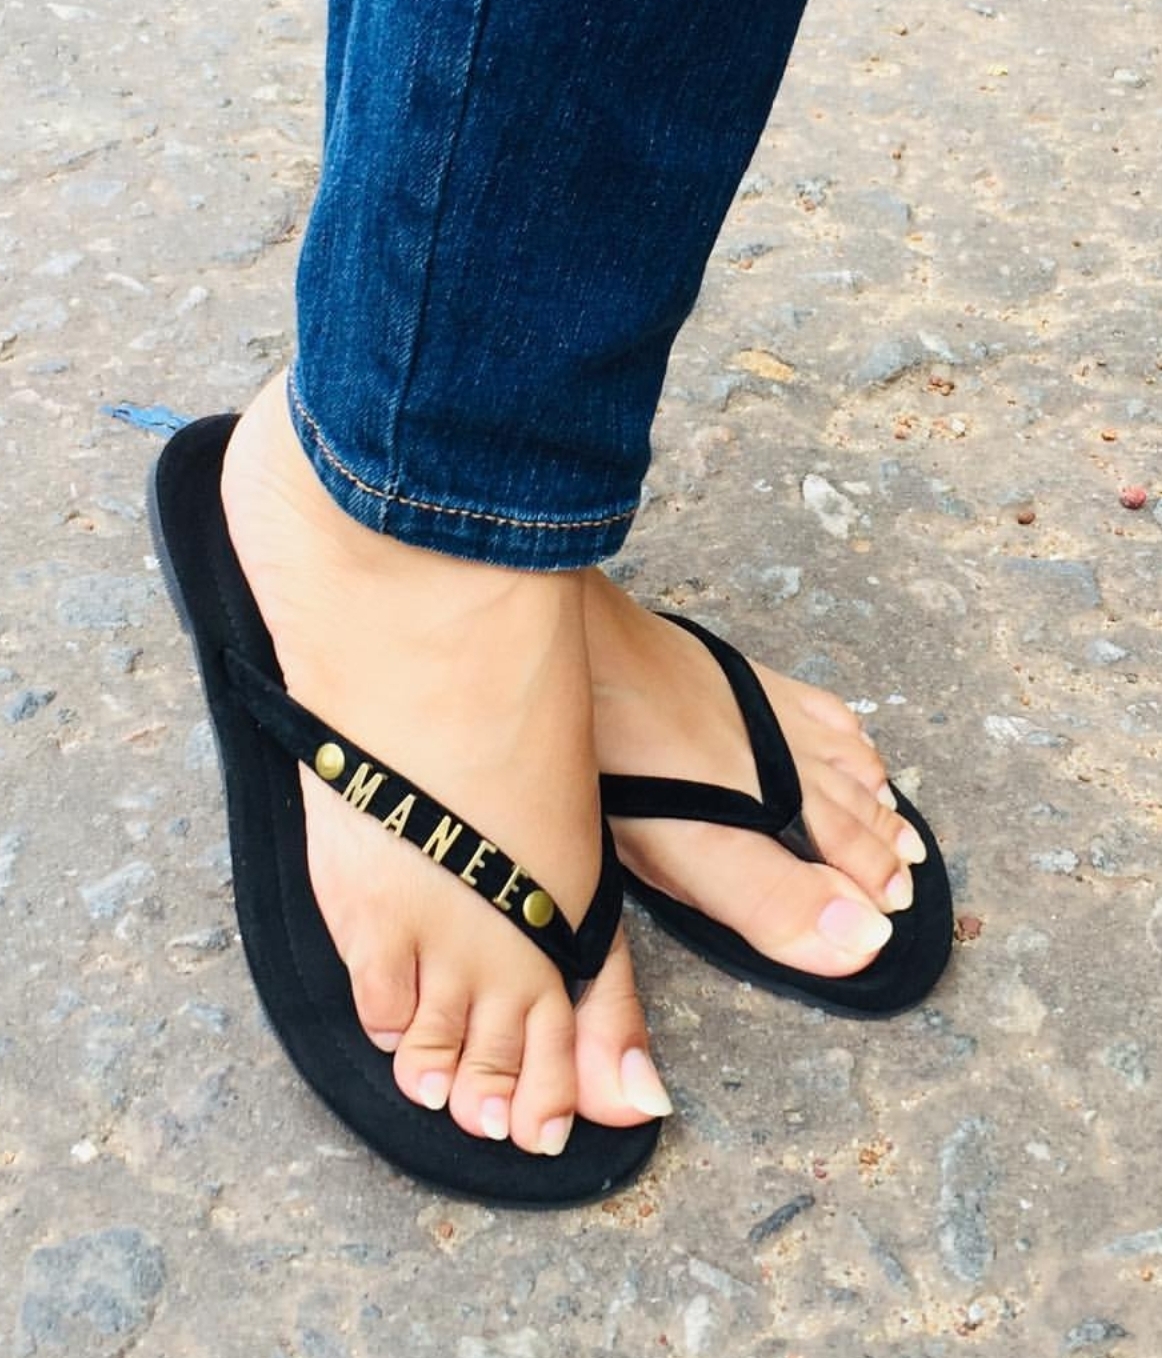 Jenelle jcakess feet